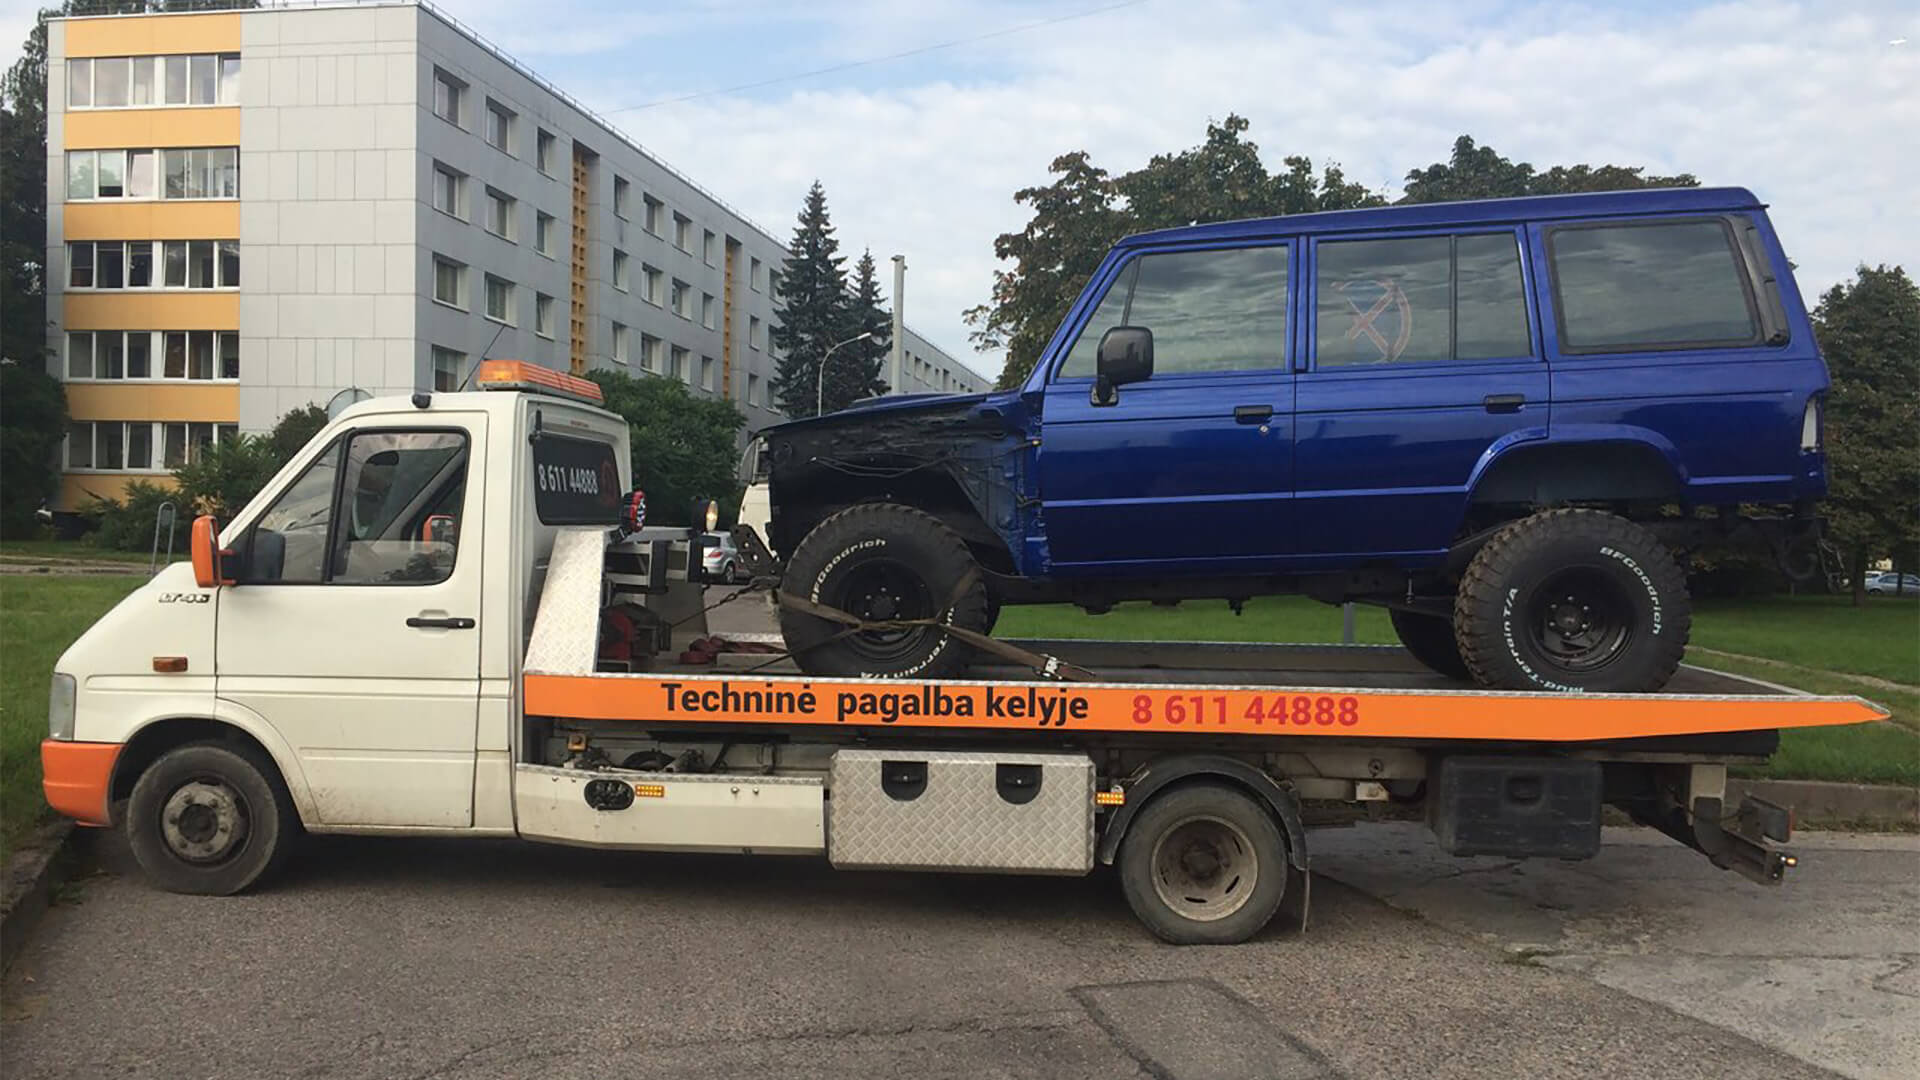 Tralo paslaugos techninė pagalba kelyje visa para 24 7 visoje Lietuvoje Vilniuje